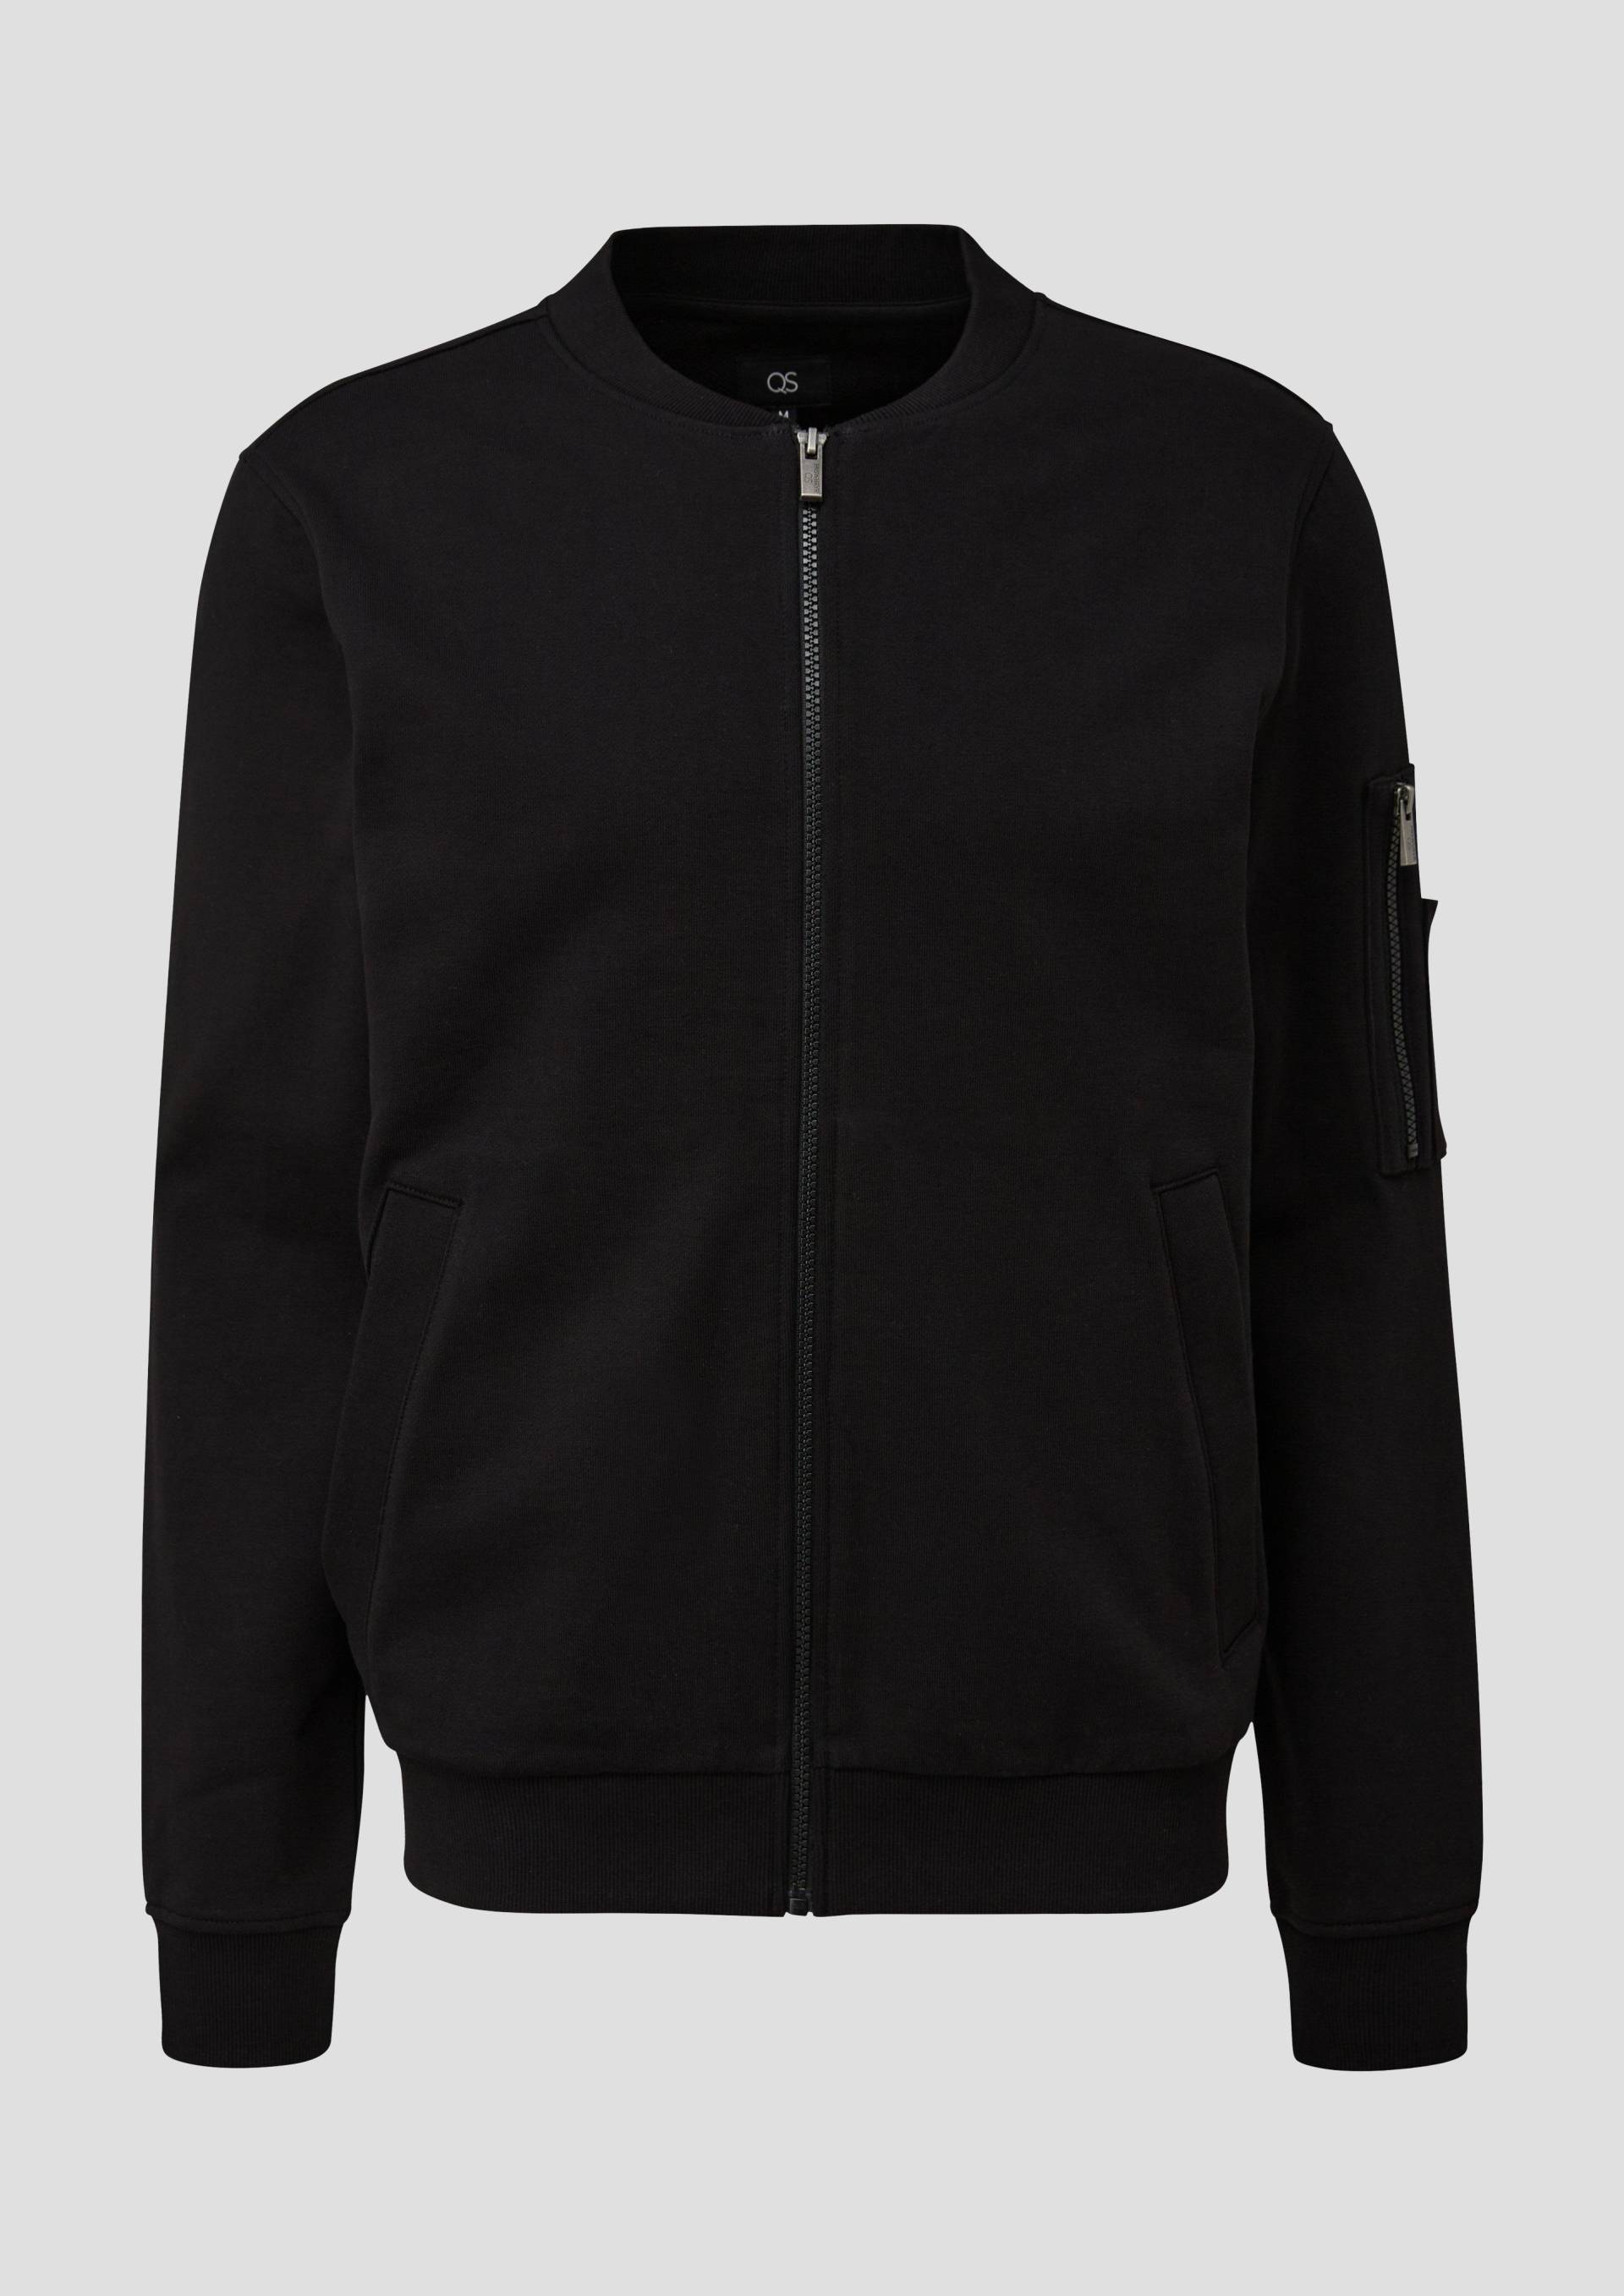 QS - Sweatshirt-Jacke mit Ärmeltasche, Herren, schwarz von QS